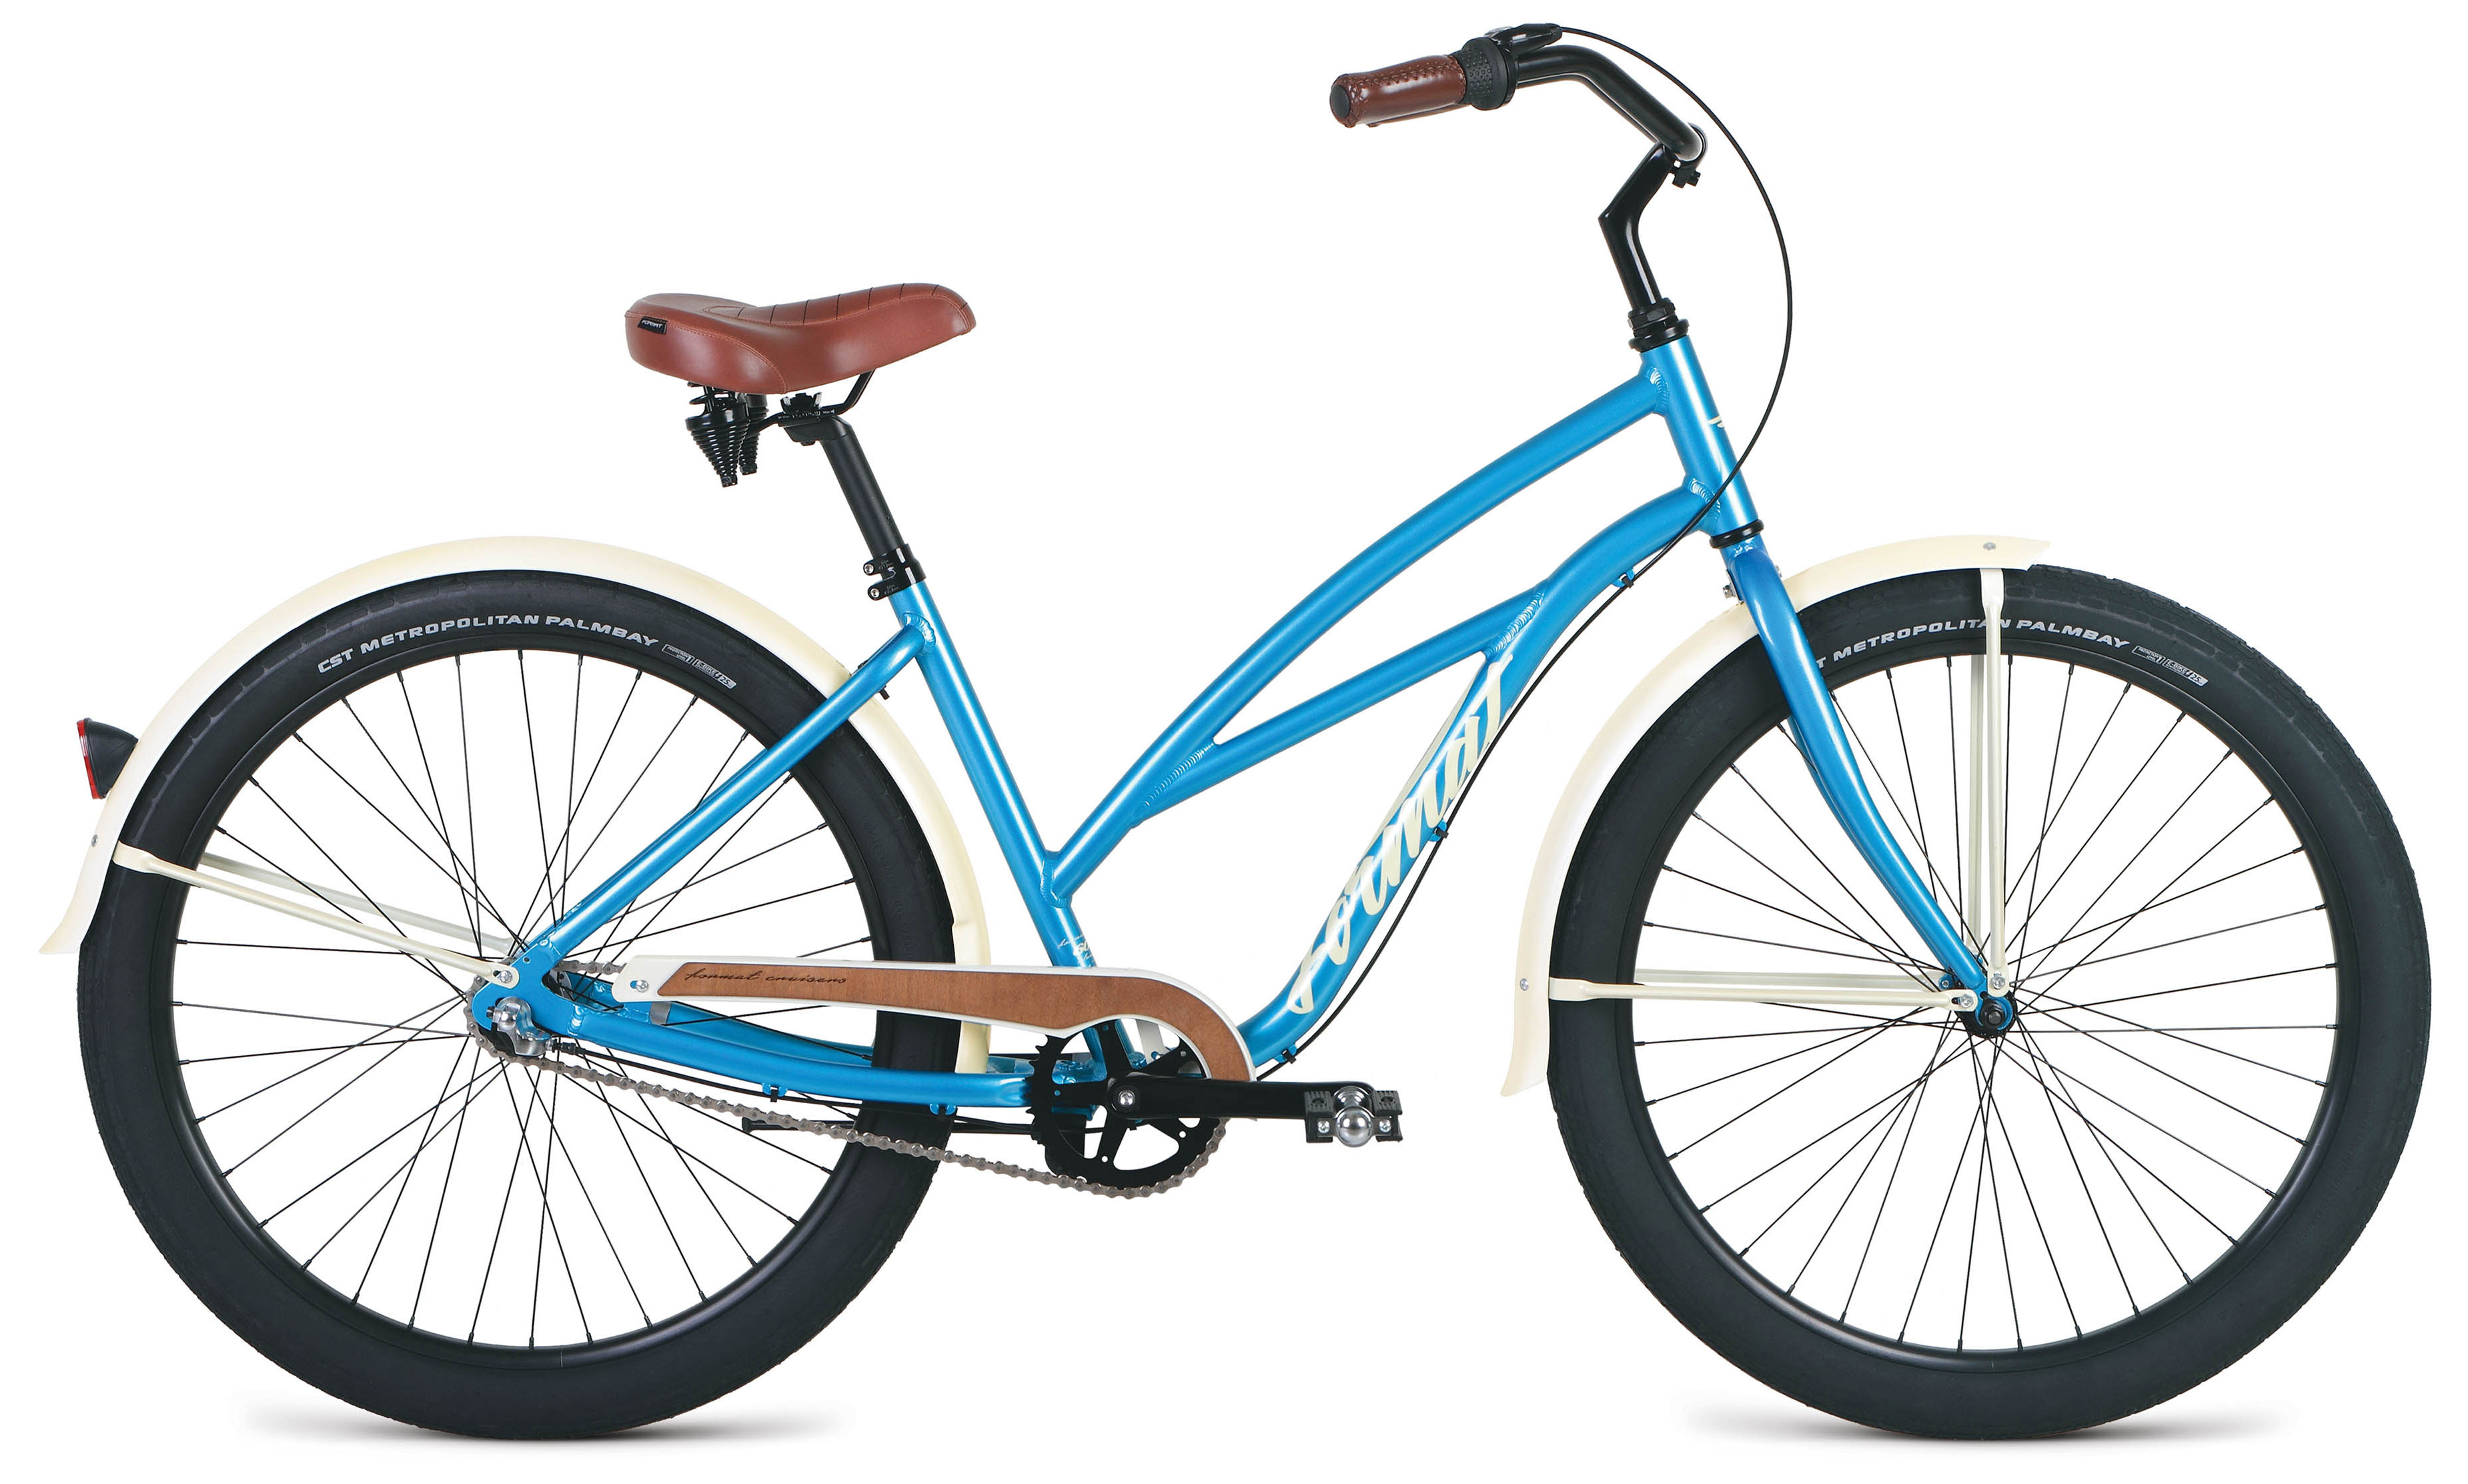  Велосипед Format 5522 26 2019